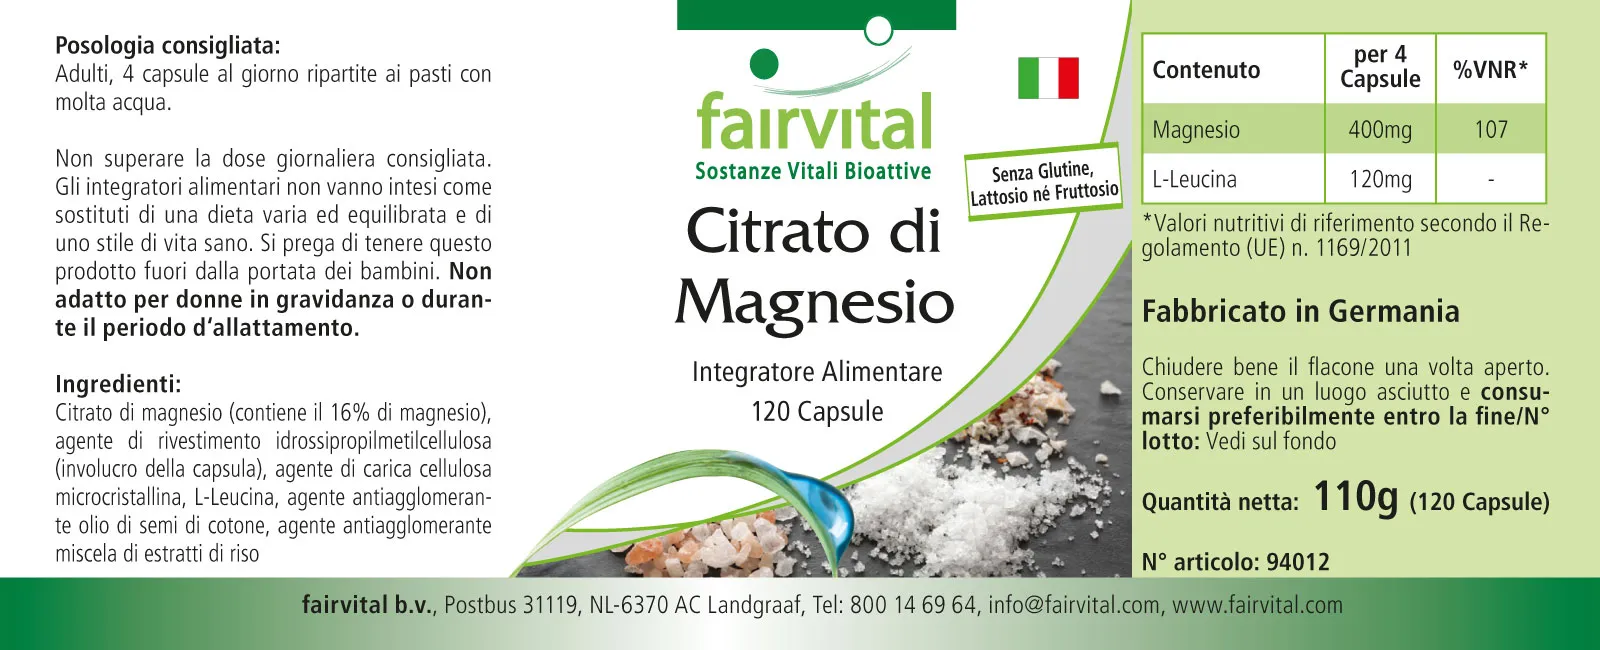 Magnesiumcitraat - 120 capsules